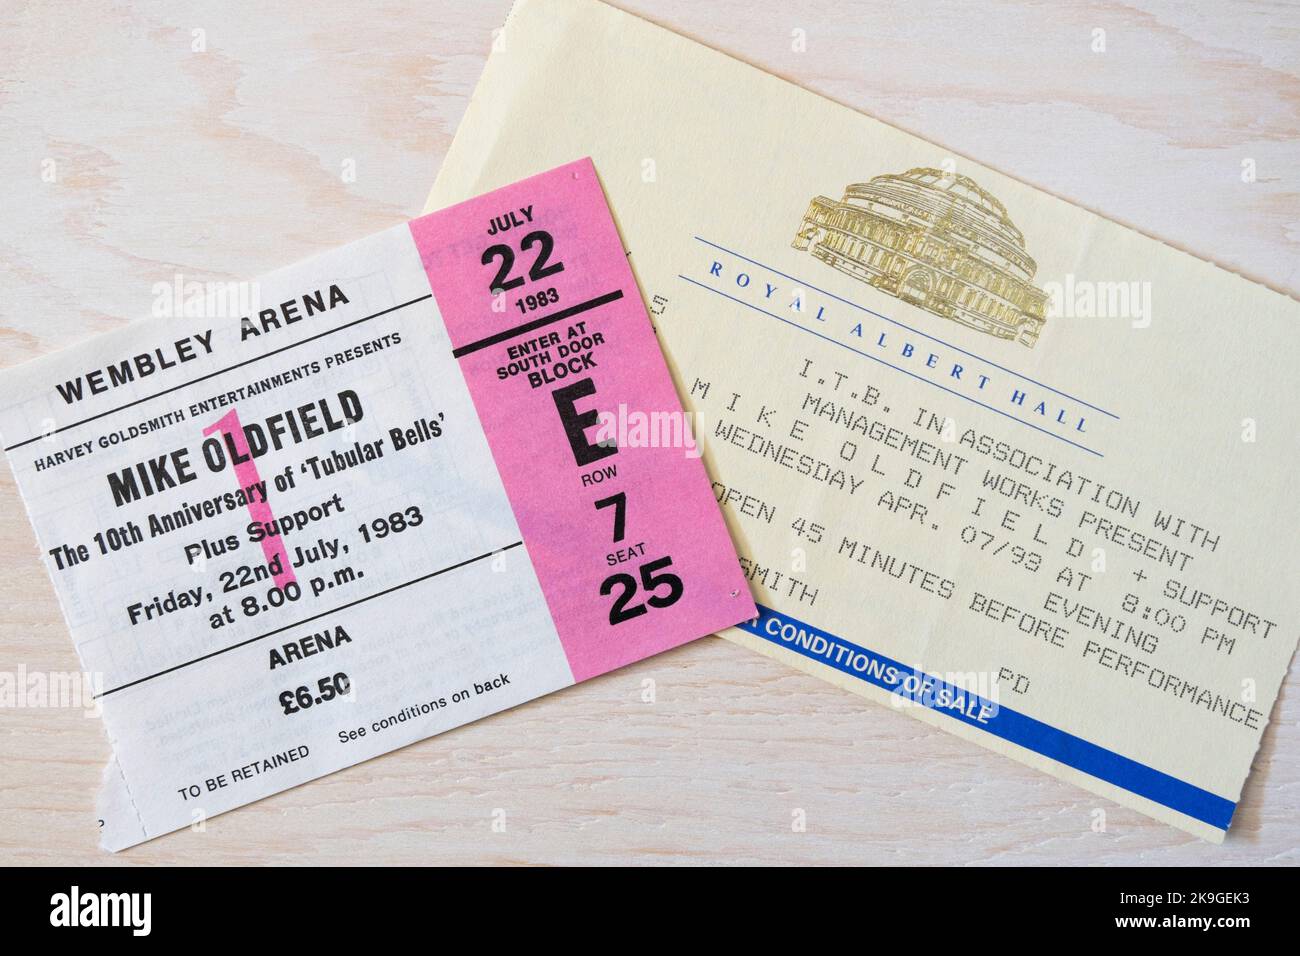 Biglietti per i concerti di Mike Oldfield per il 10th° anniversario di tubular Bells nel 1983 e il 20th° nel 1993 presso la Royal albert Hall & Wembley Arena, Londra, U. Foto Stock